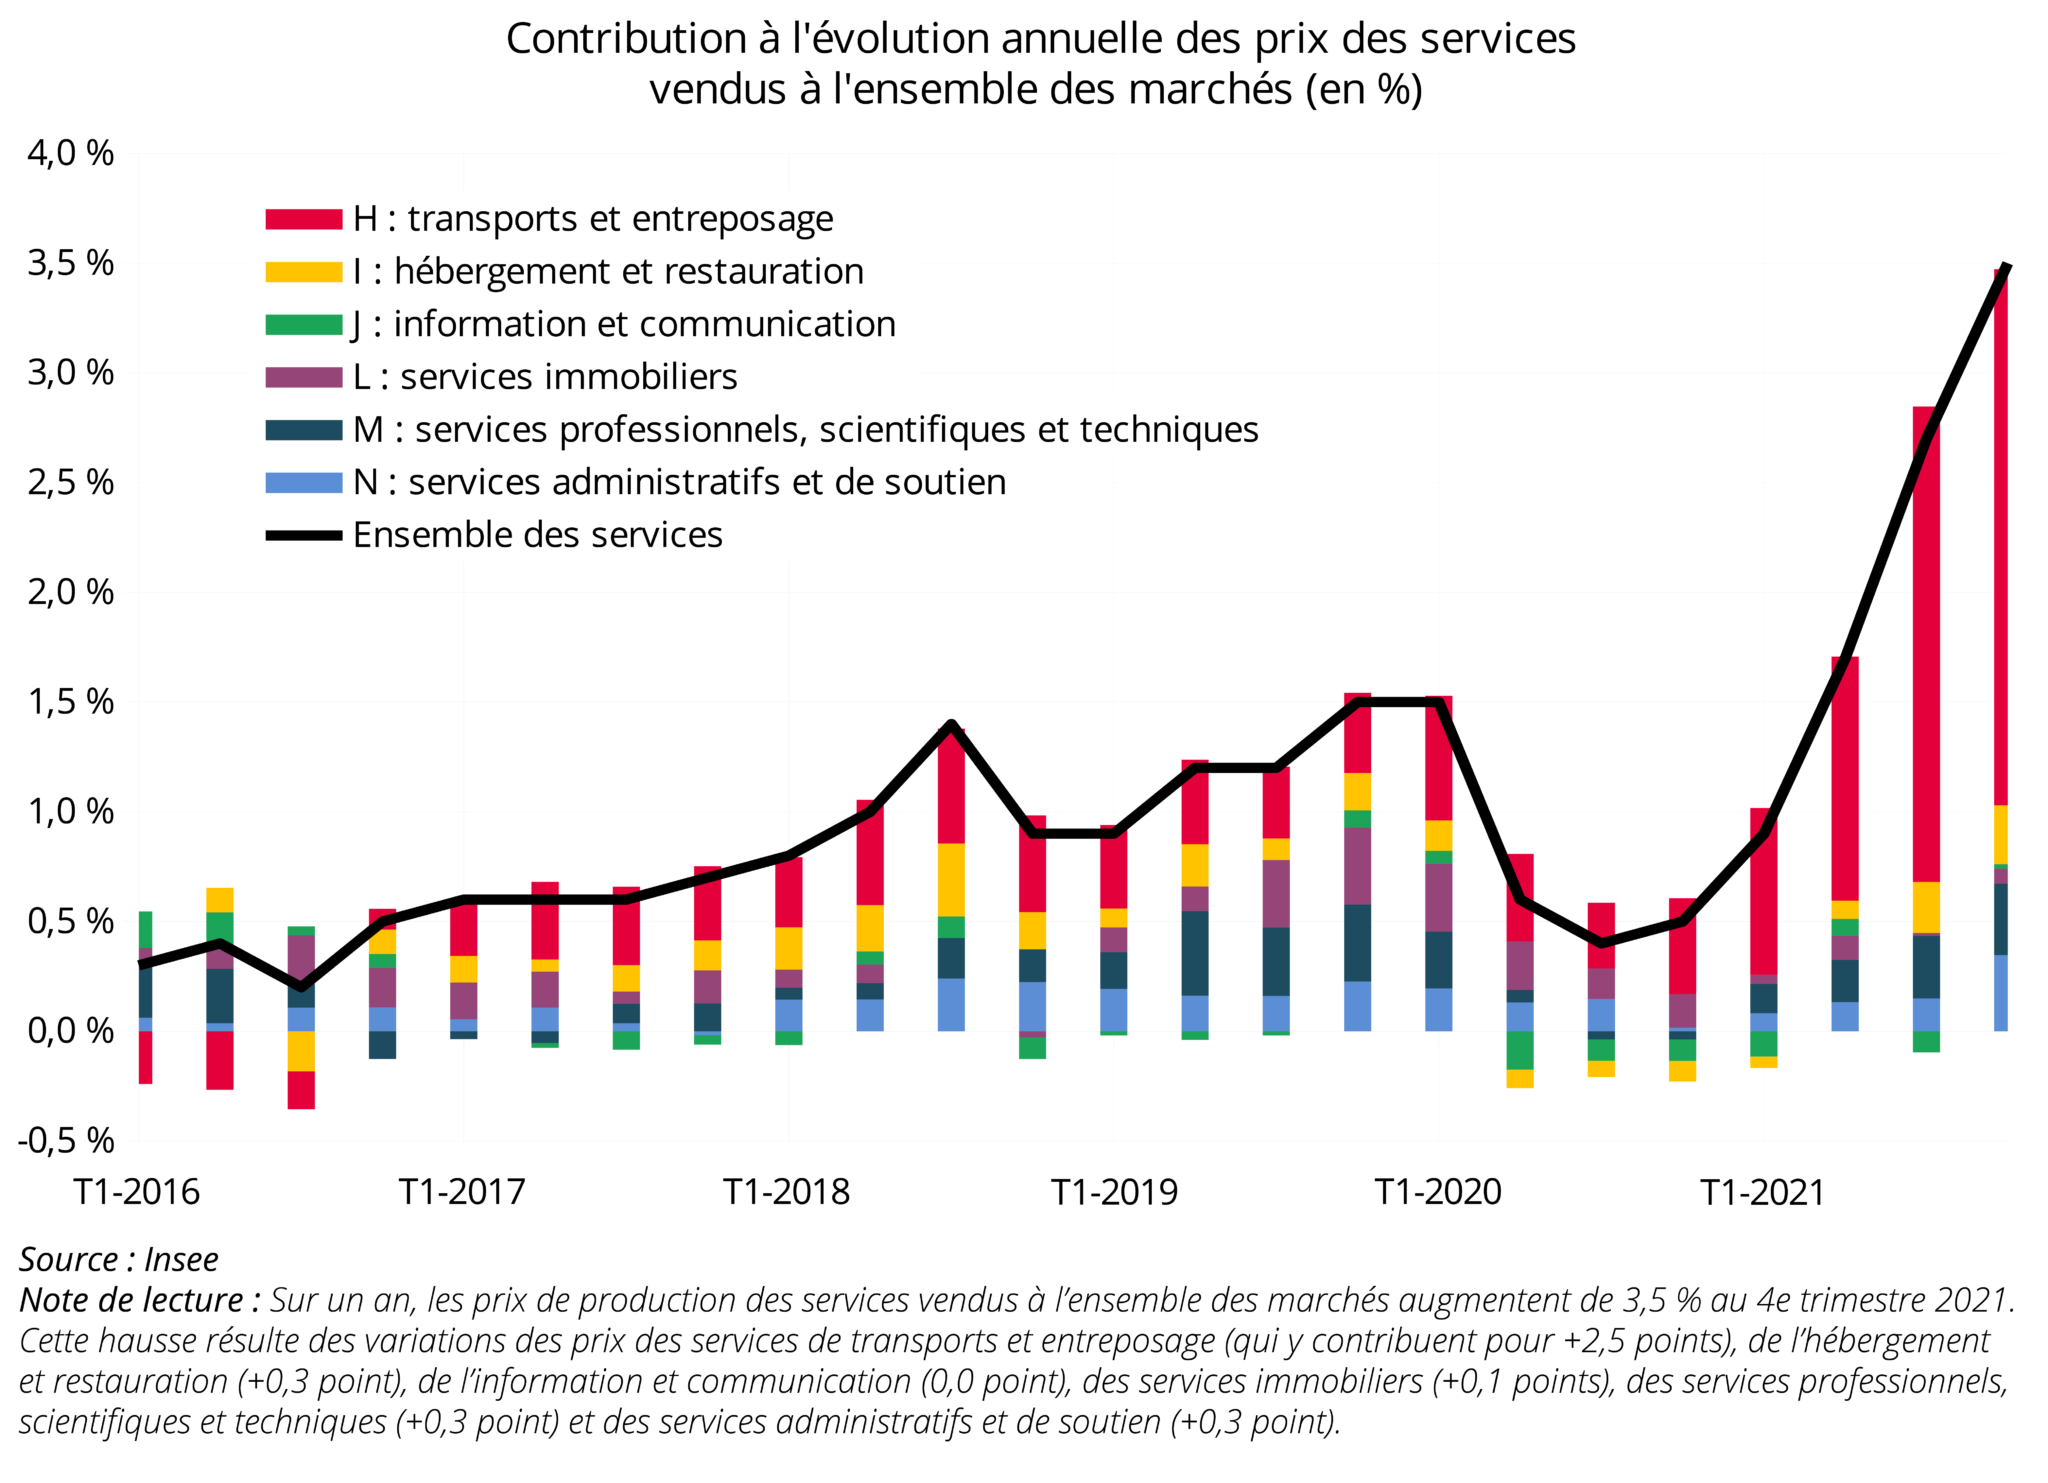 Contribution à l'évolution annuelle des prix des services vendus à l'ensemble des marchés (en %)